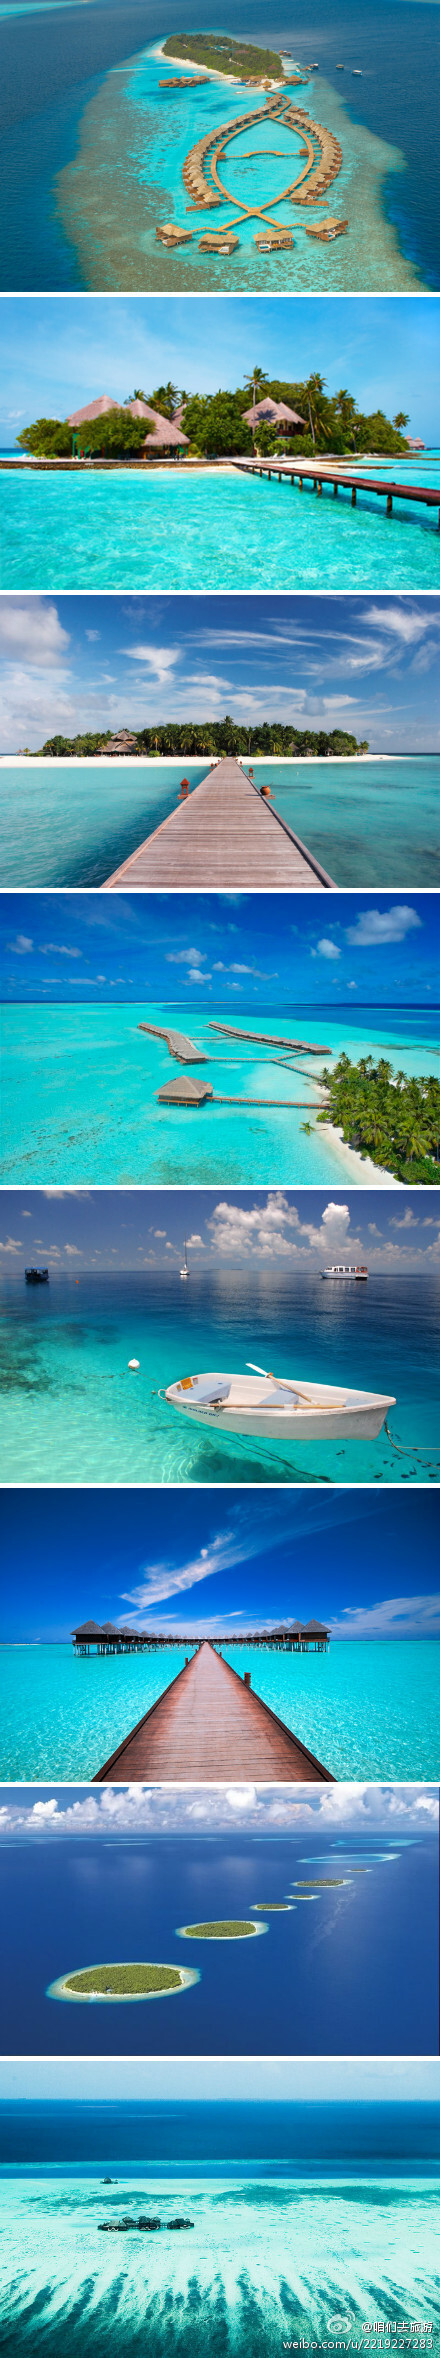 马尔代夫群岛,由星罗棋布的1200个小岛组成,平均海拔1.2米.